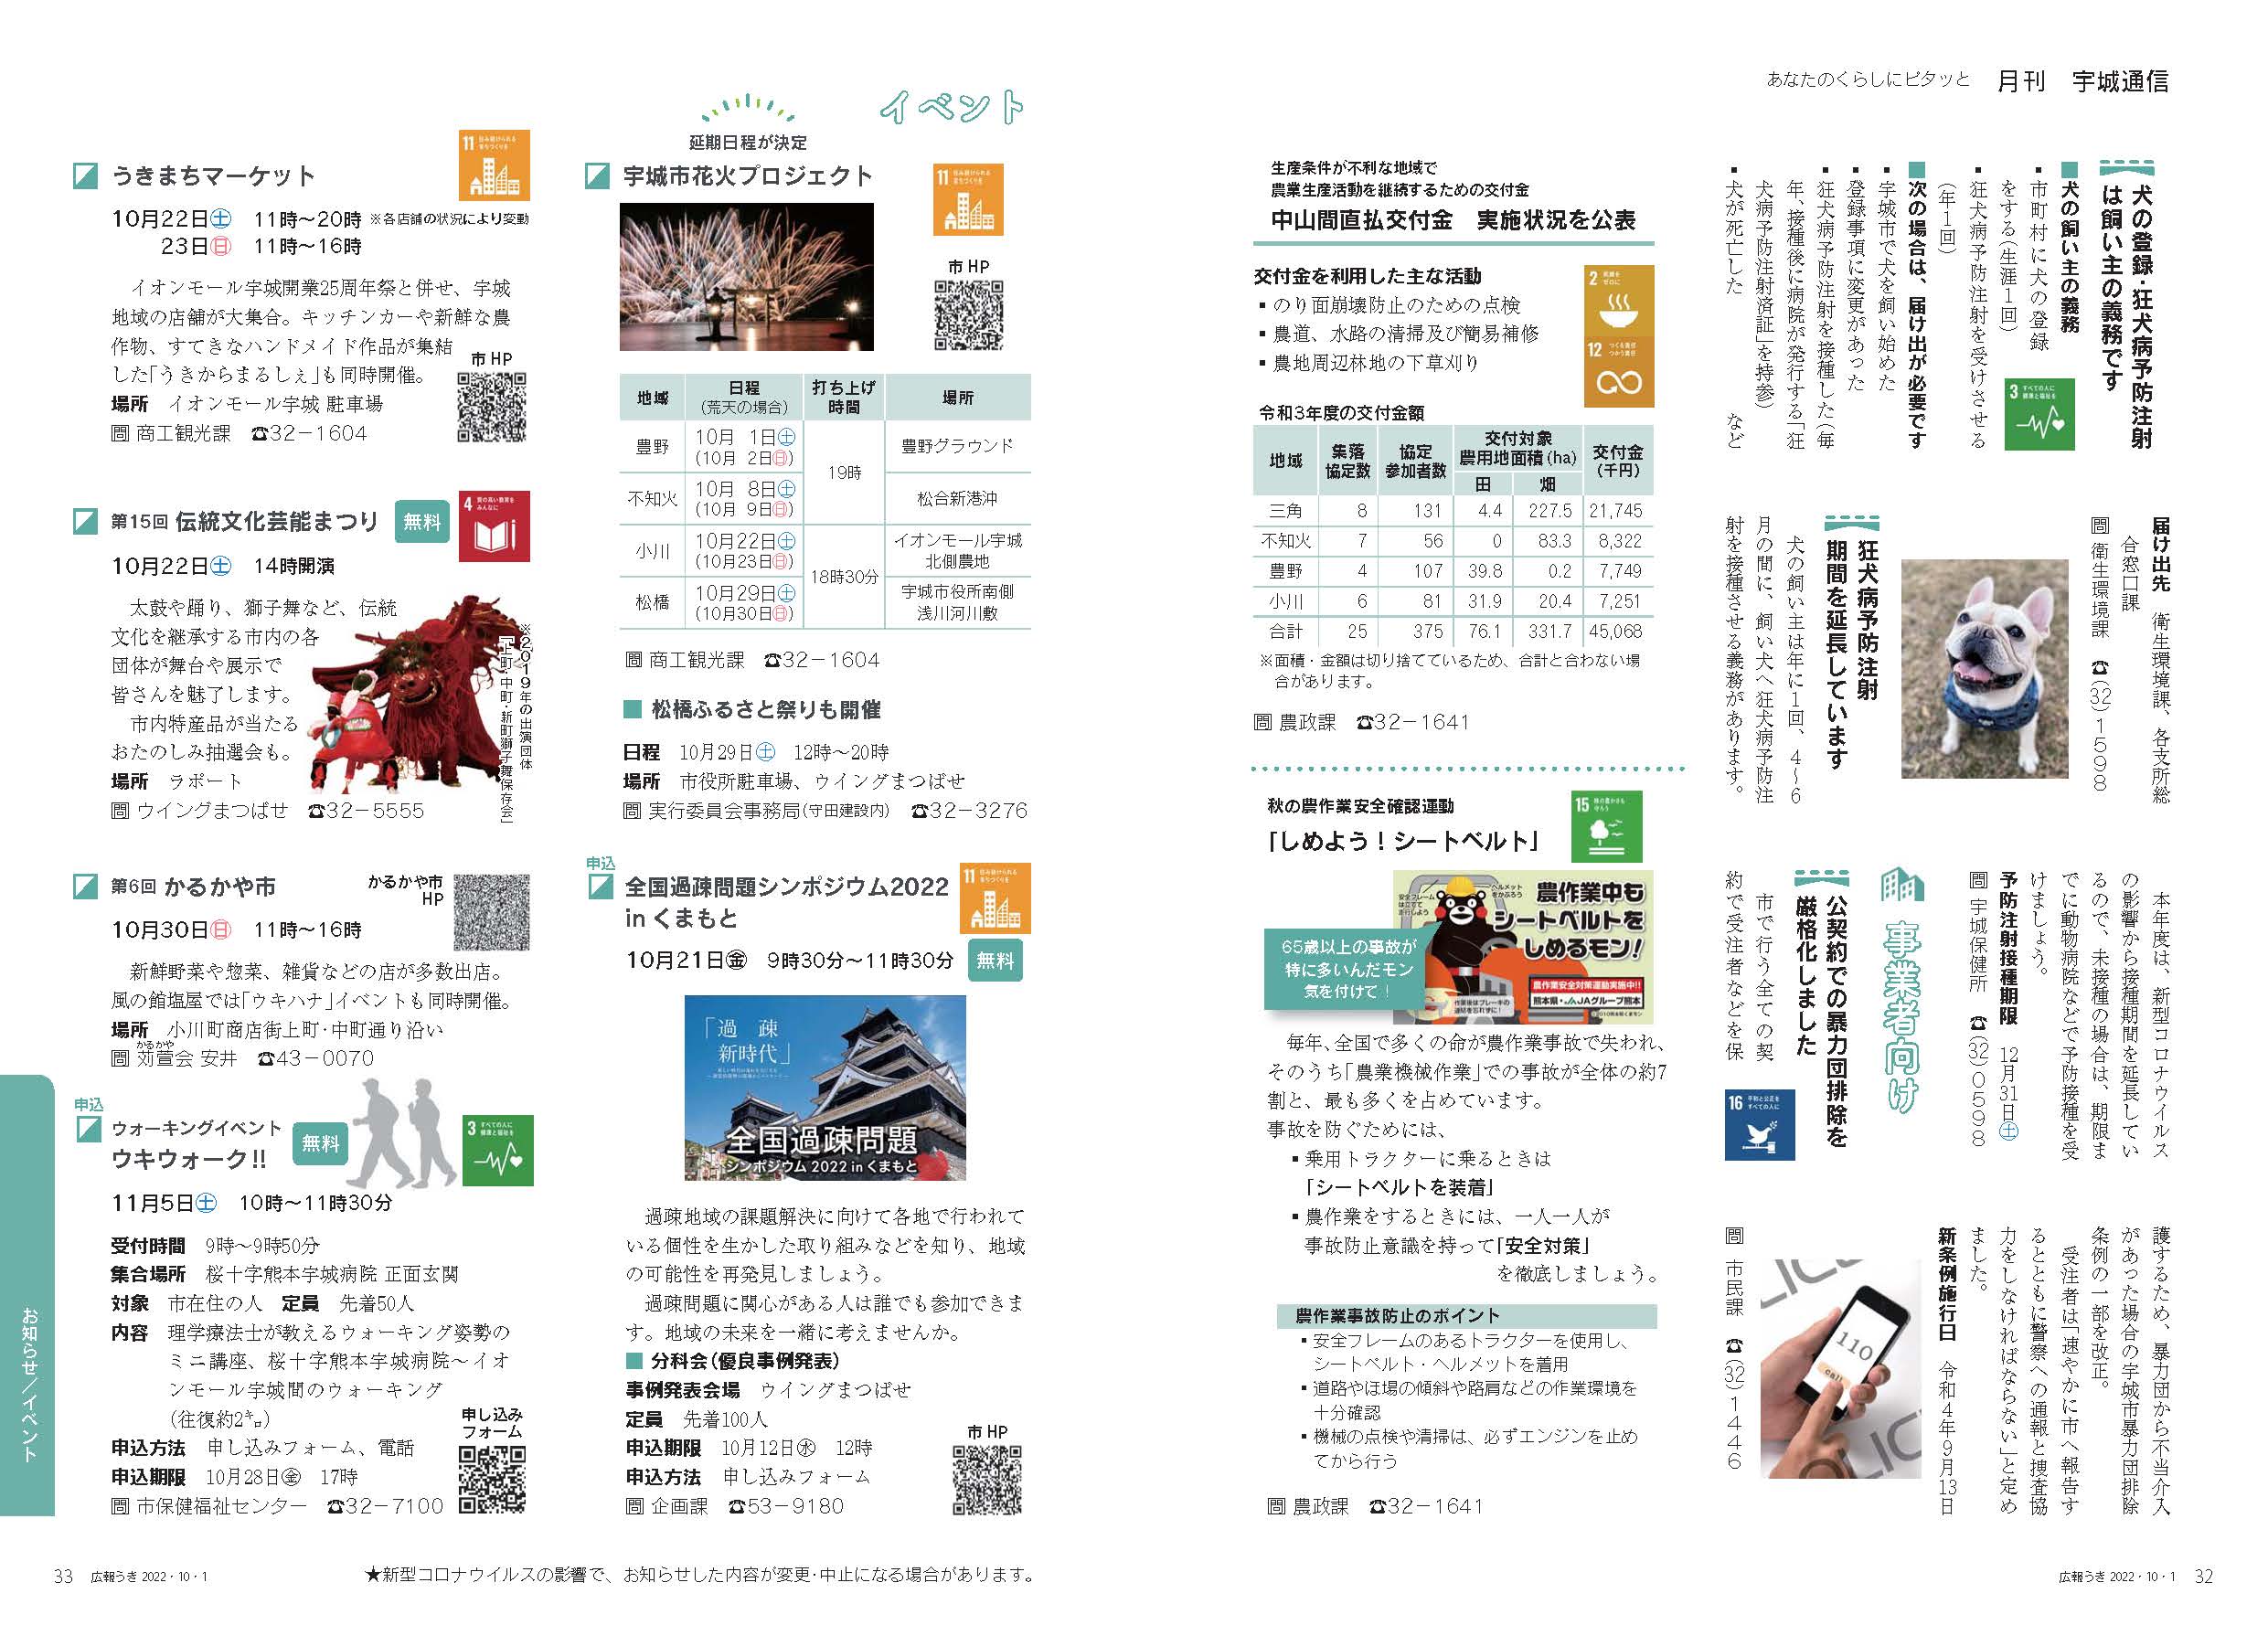 P32、P33　あなたのくらしにピタッと　月刊 宇城通信のページ画像　詳細はPDFリンクを参照ください。